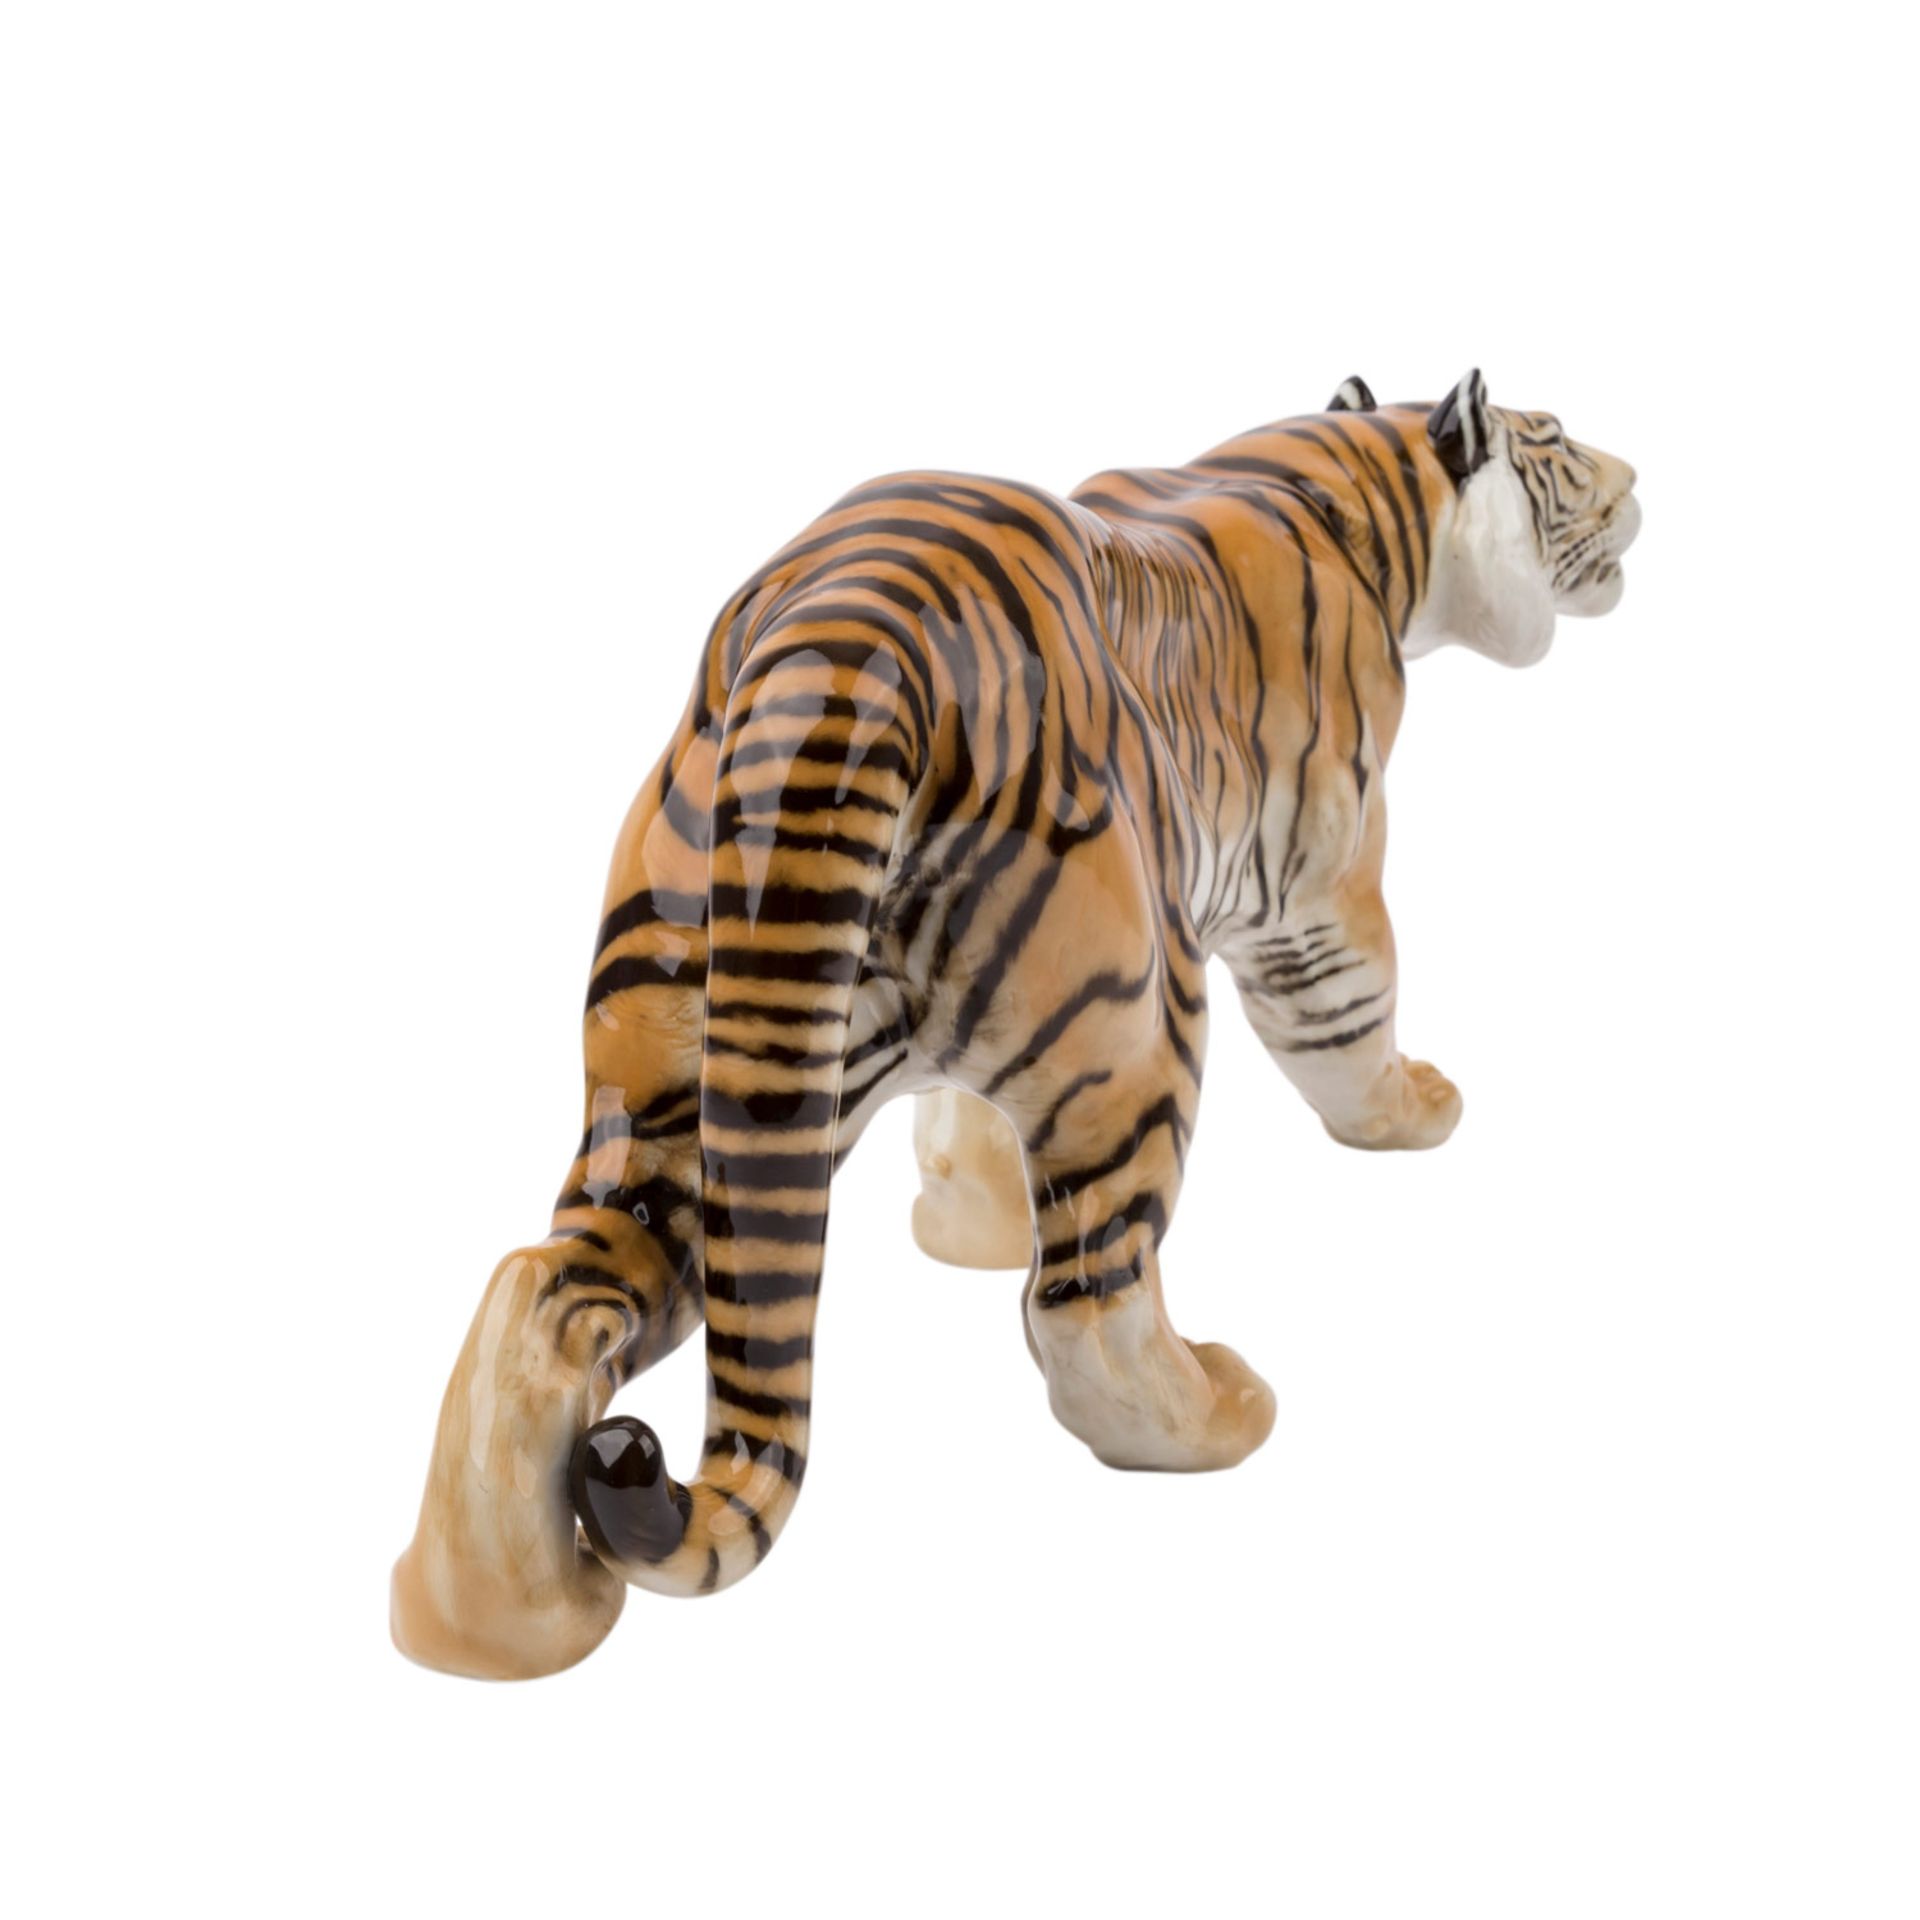 HUTSCHENREUTHER 'Schreitender Tiger', Marke nach 1982.Weißporzellan polychrom gefaßt, L. ca. 57cm. - Bild 3 aus 5